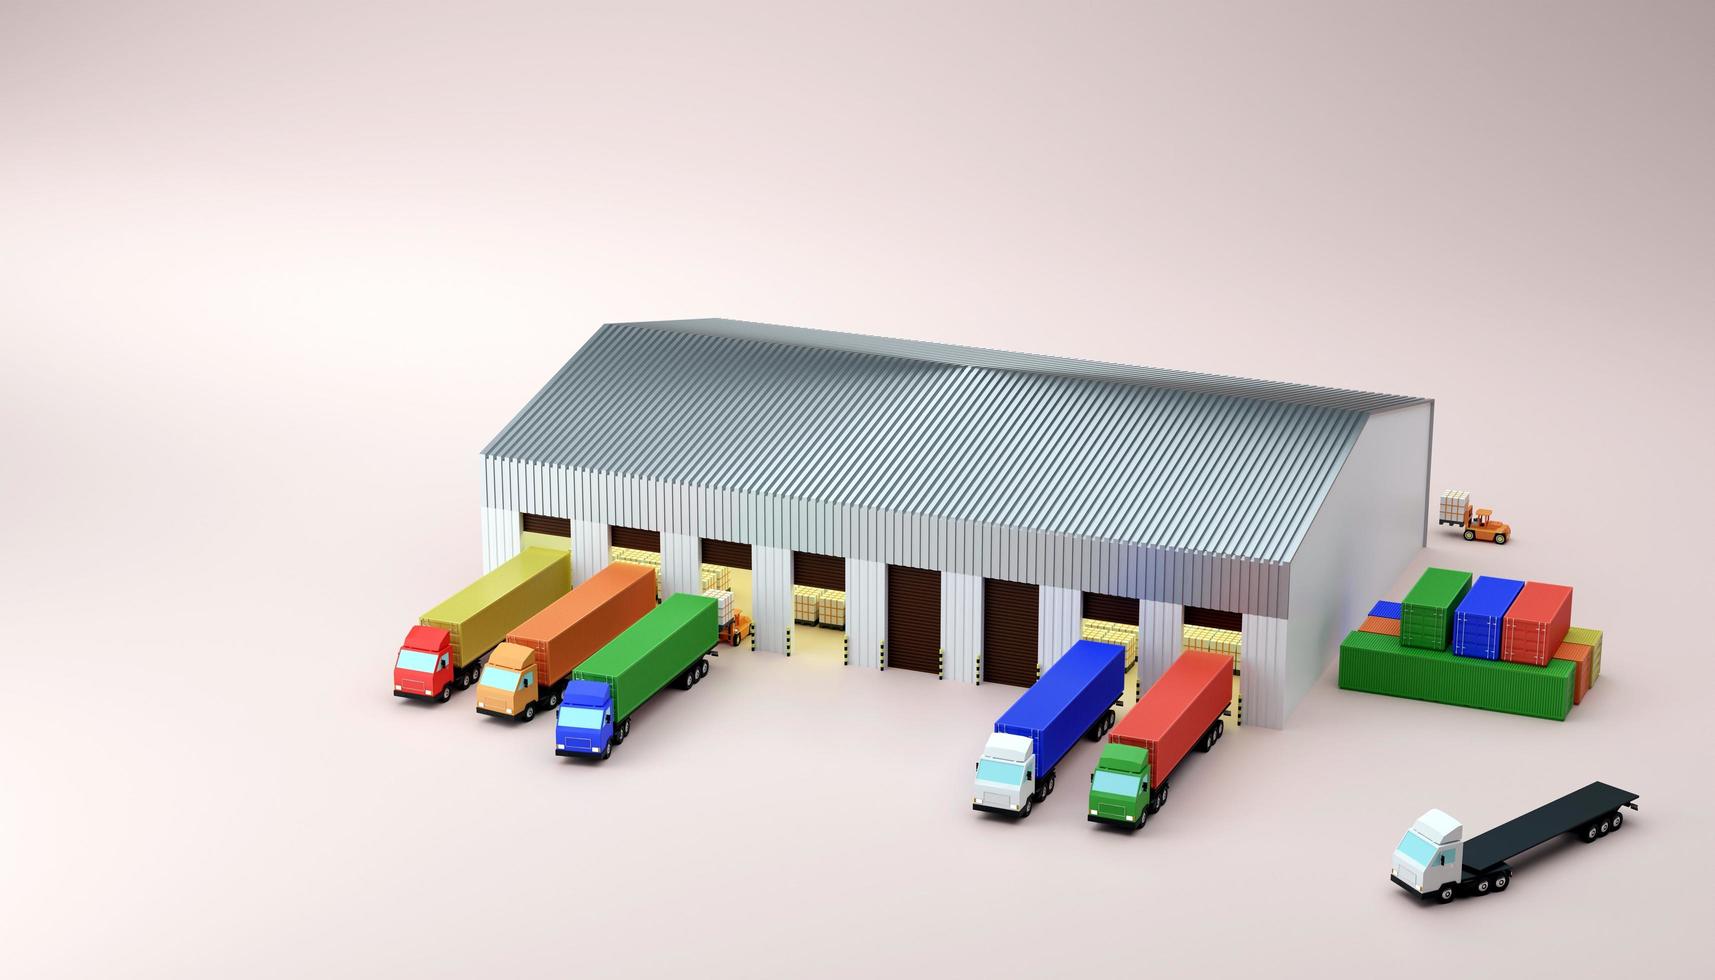 parc de camions conteneurs pour charger des marchandises à l'illustration de rendu 3d de l'entrepôt photo